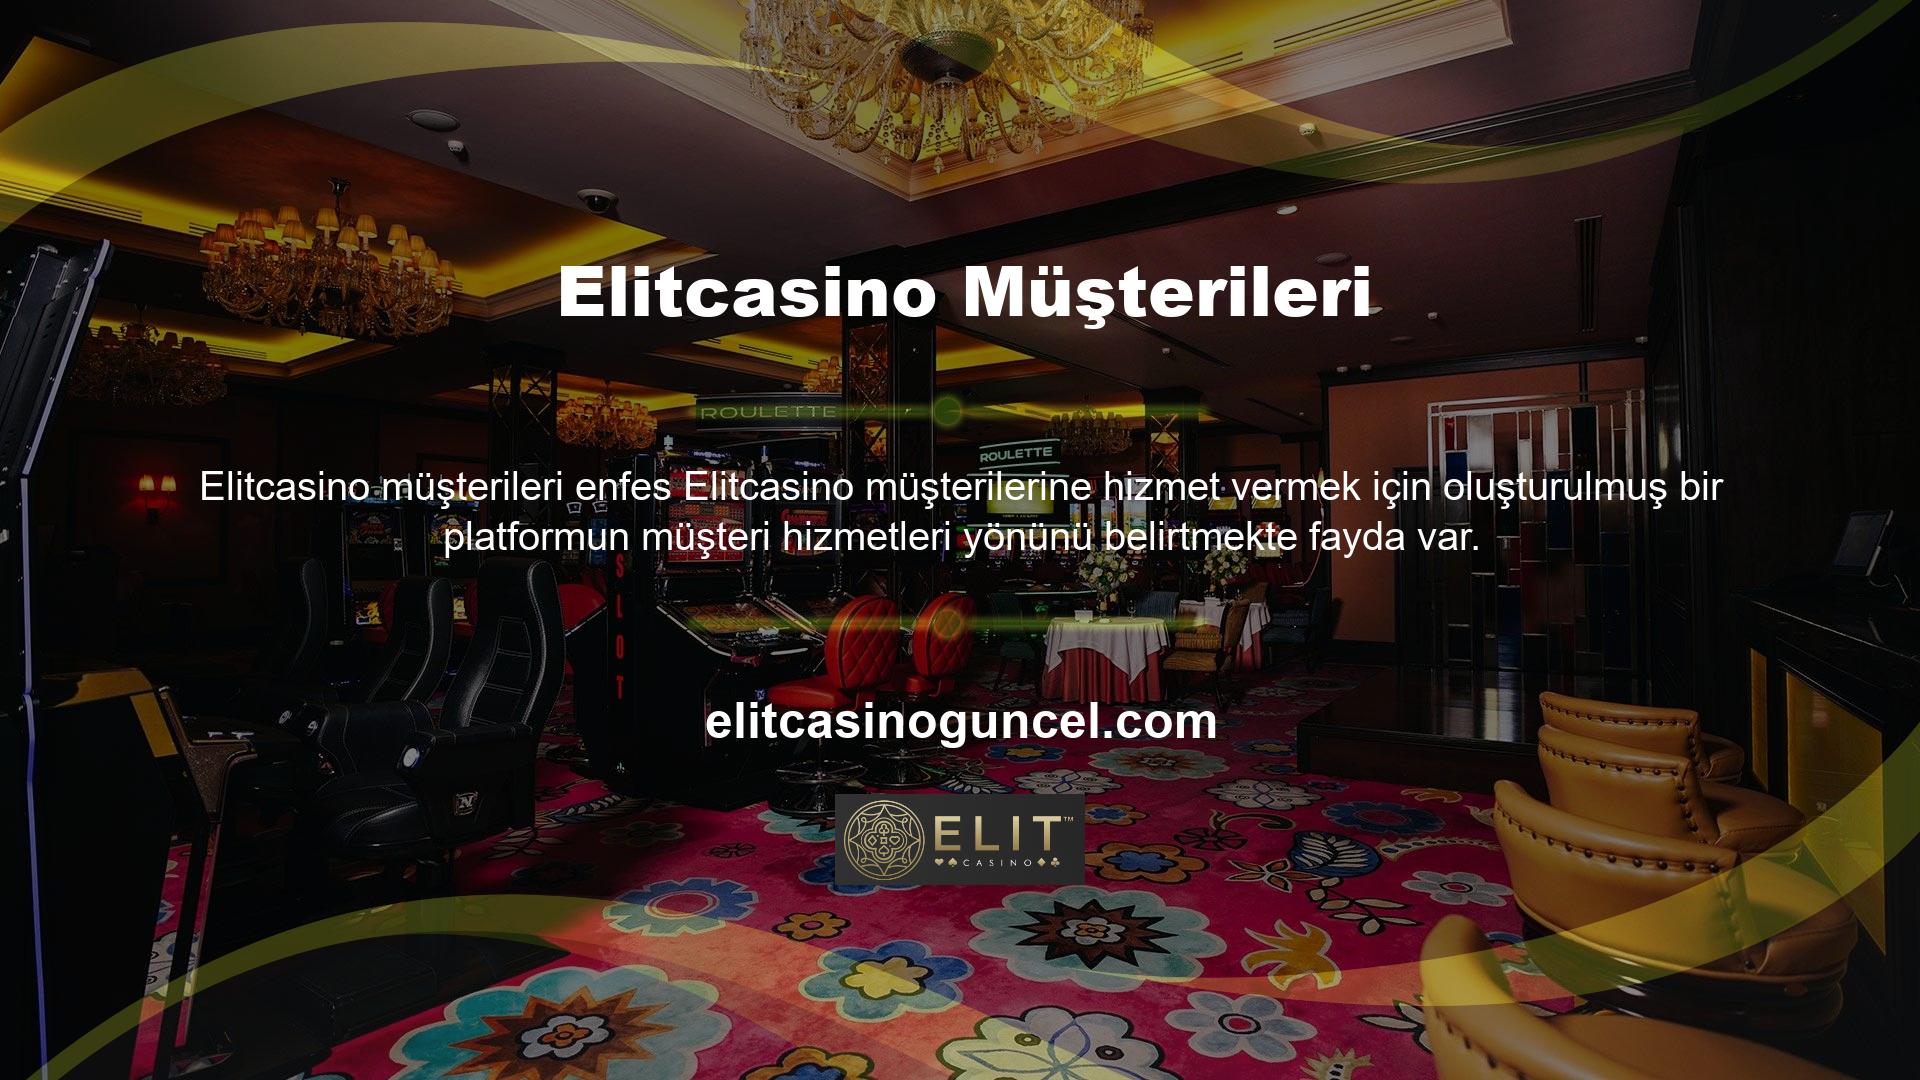 ' Casino World müşteri hizmetleri ekibi tarafından casino tutkunlarına 7/24 destek verilmektedir Türk müşterilerine verdiği önemi artıran ve Türkiye'nin hizmetlerini geliştiren casino dünyası platformundaki teknolojilerden birini kullanarak,Elitcasino müşterilerinin memnuniyetini sağlamak için tasarlanmış bir platformun müşteri hizmetlerini dikkate almaya değer